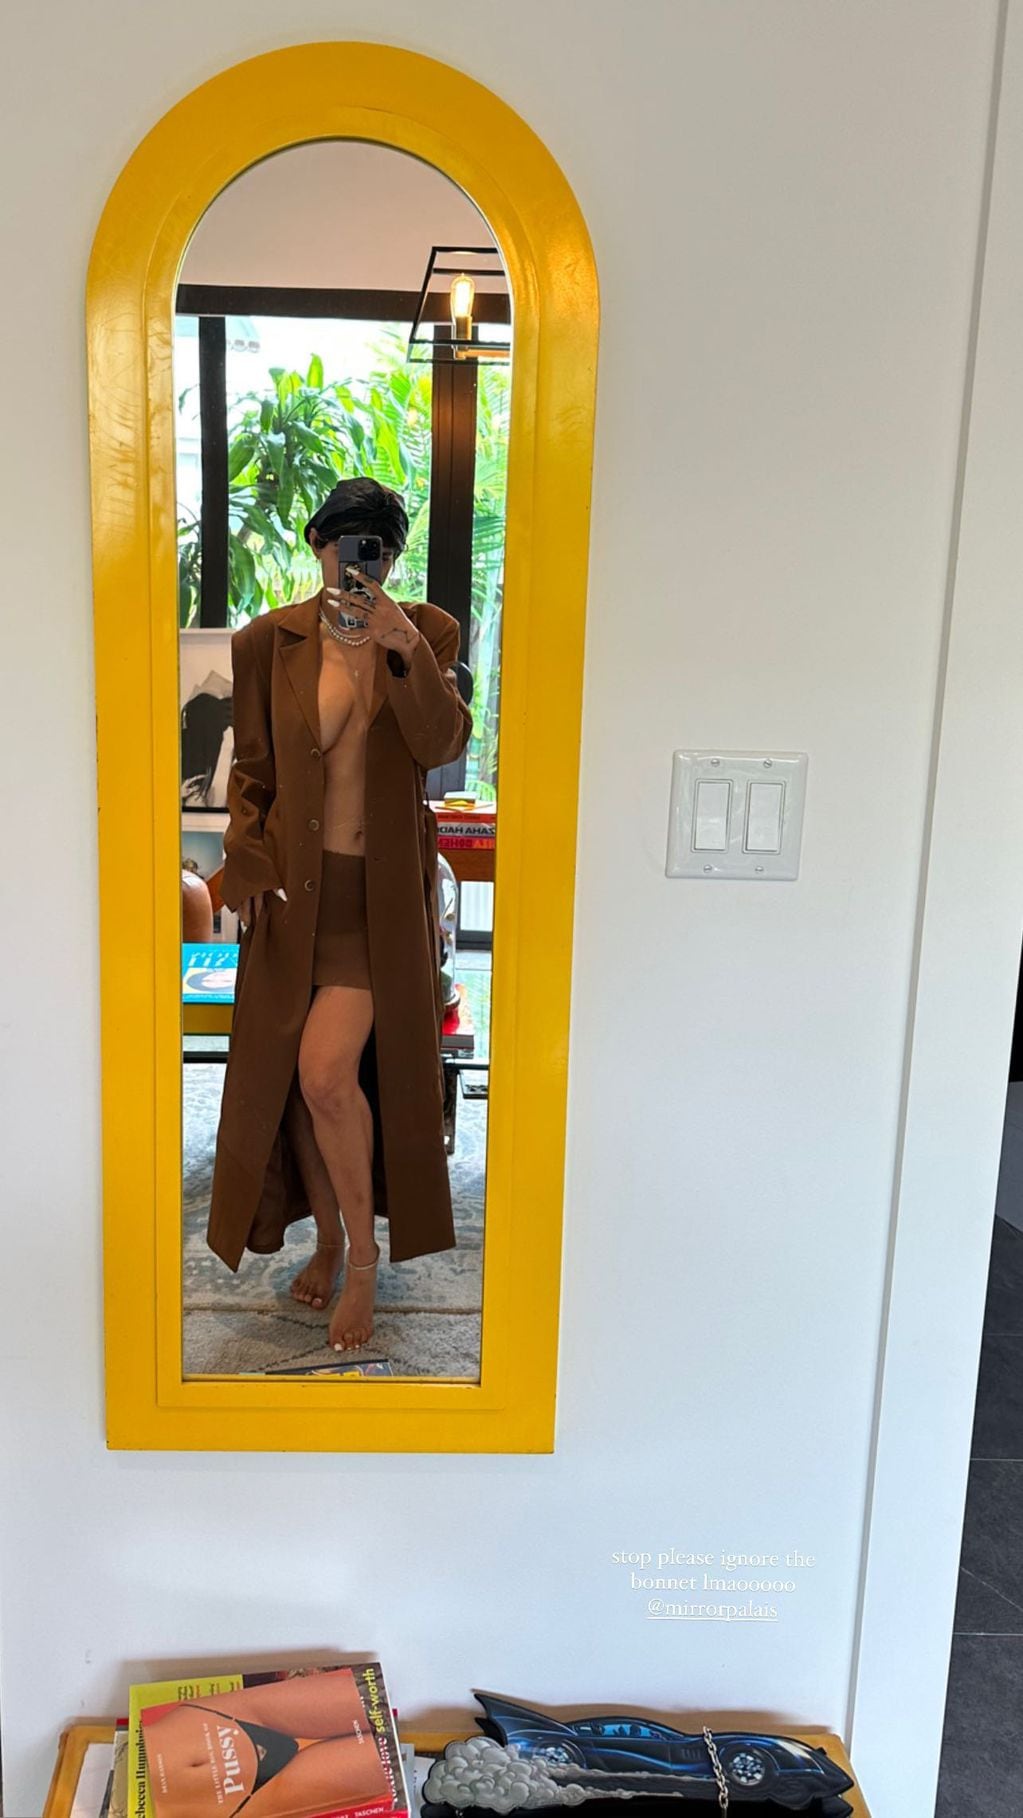 Mia Khalifa dejó ver de más en Instagram al lucir tan solo un blazer abierto y una minifalda.